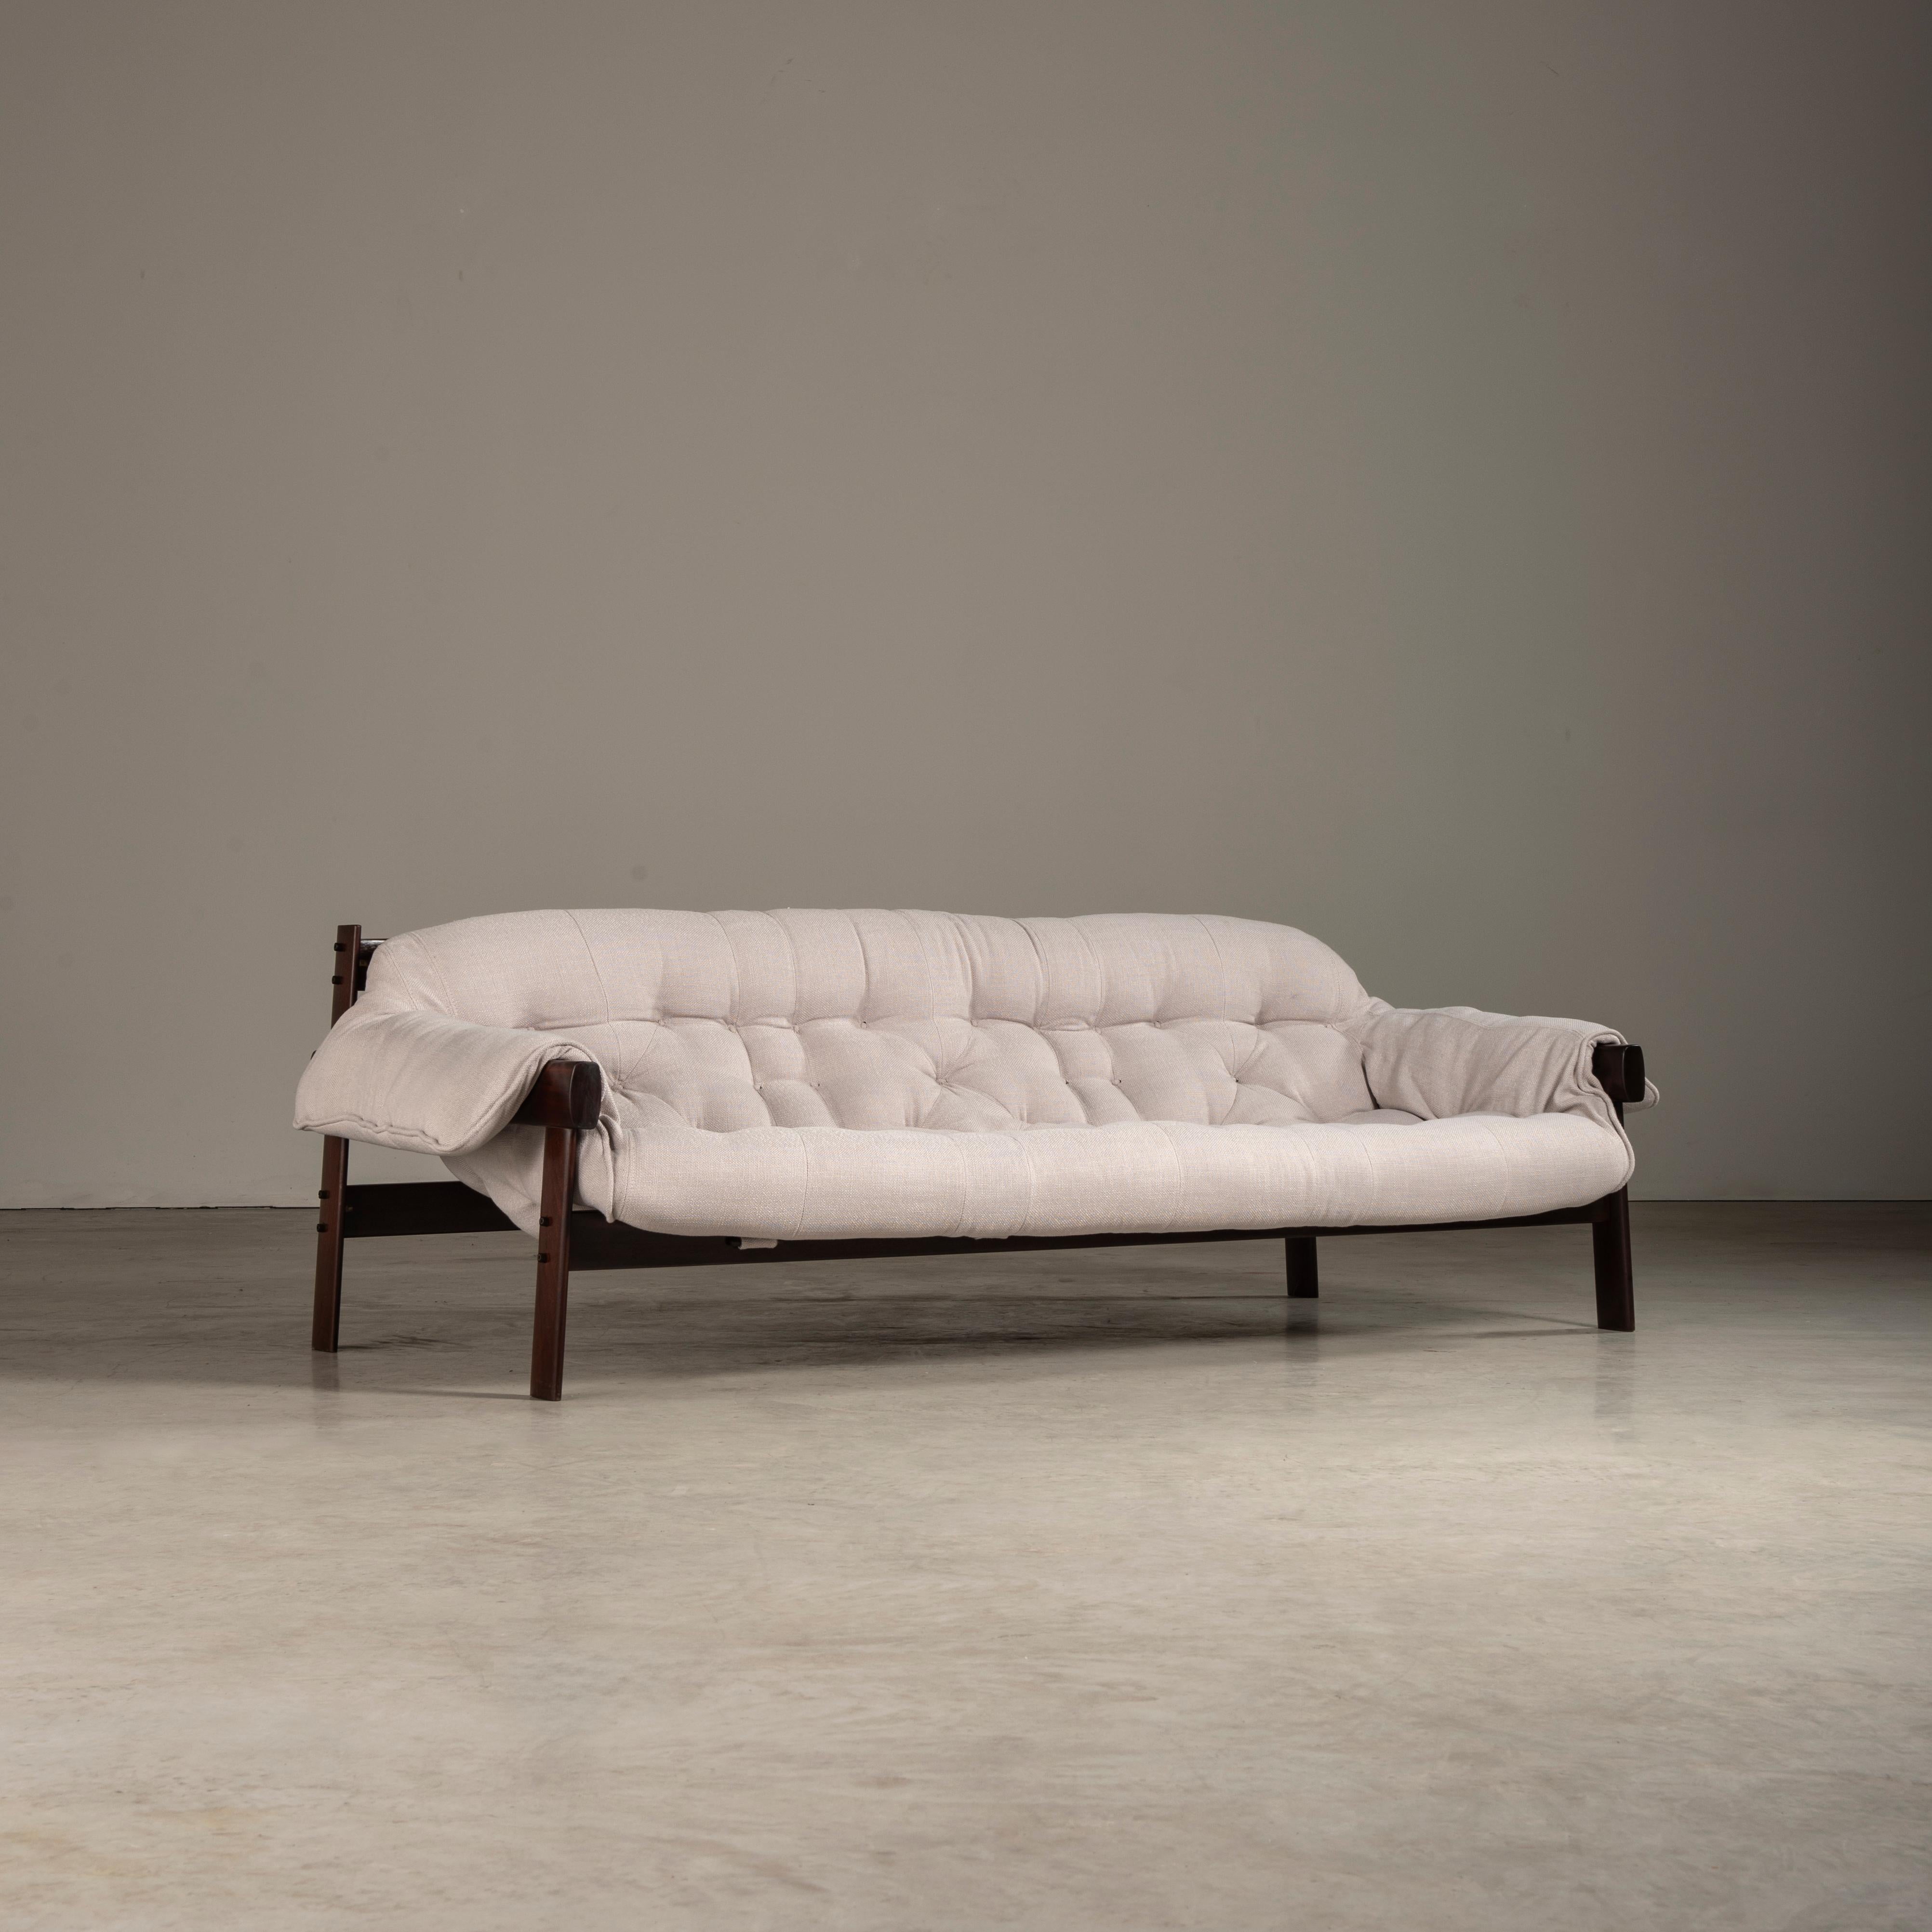 Das Sofa MP-41, ein Meisterstück des renommierten Designers Percival Lafer, ist ein Meisterwerk des brasilianischen Designs der Mitte des Jahrhunderts. Lafer, der für seinen innovativen und unverwechselbaren Stil berühmt ist, hat sein Genie in